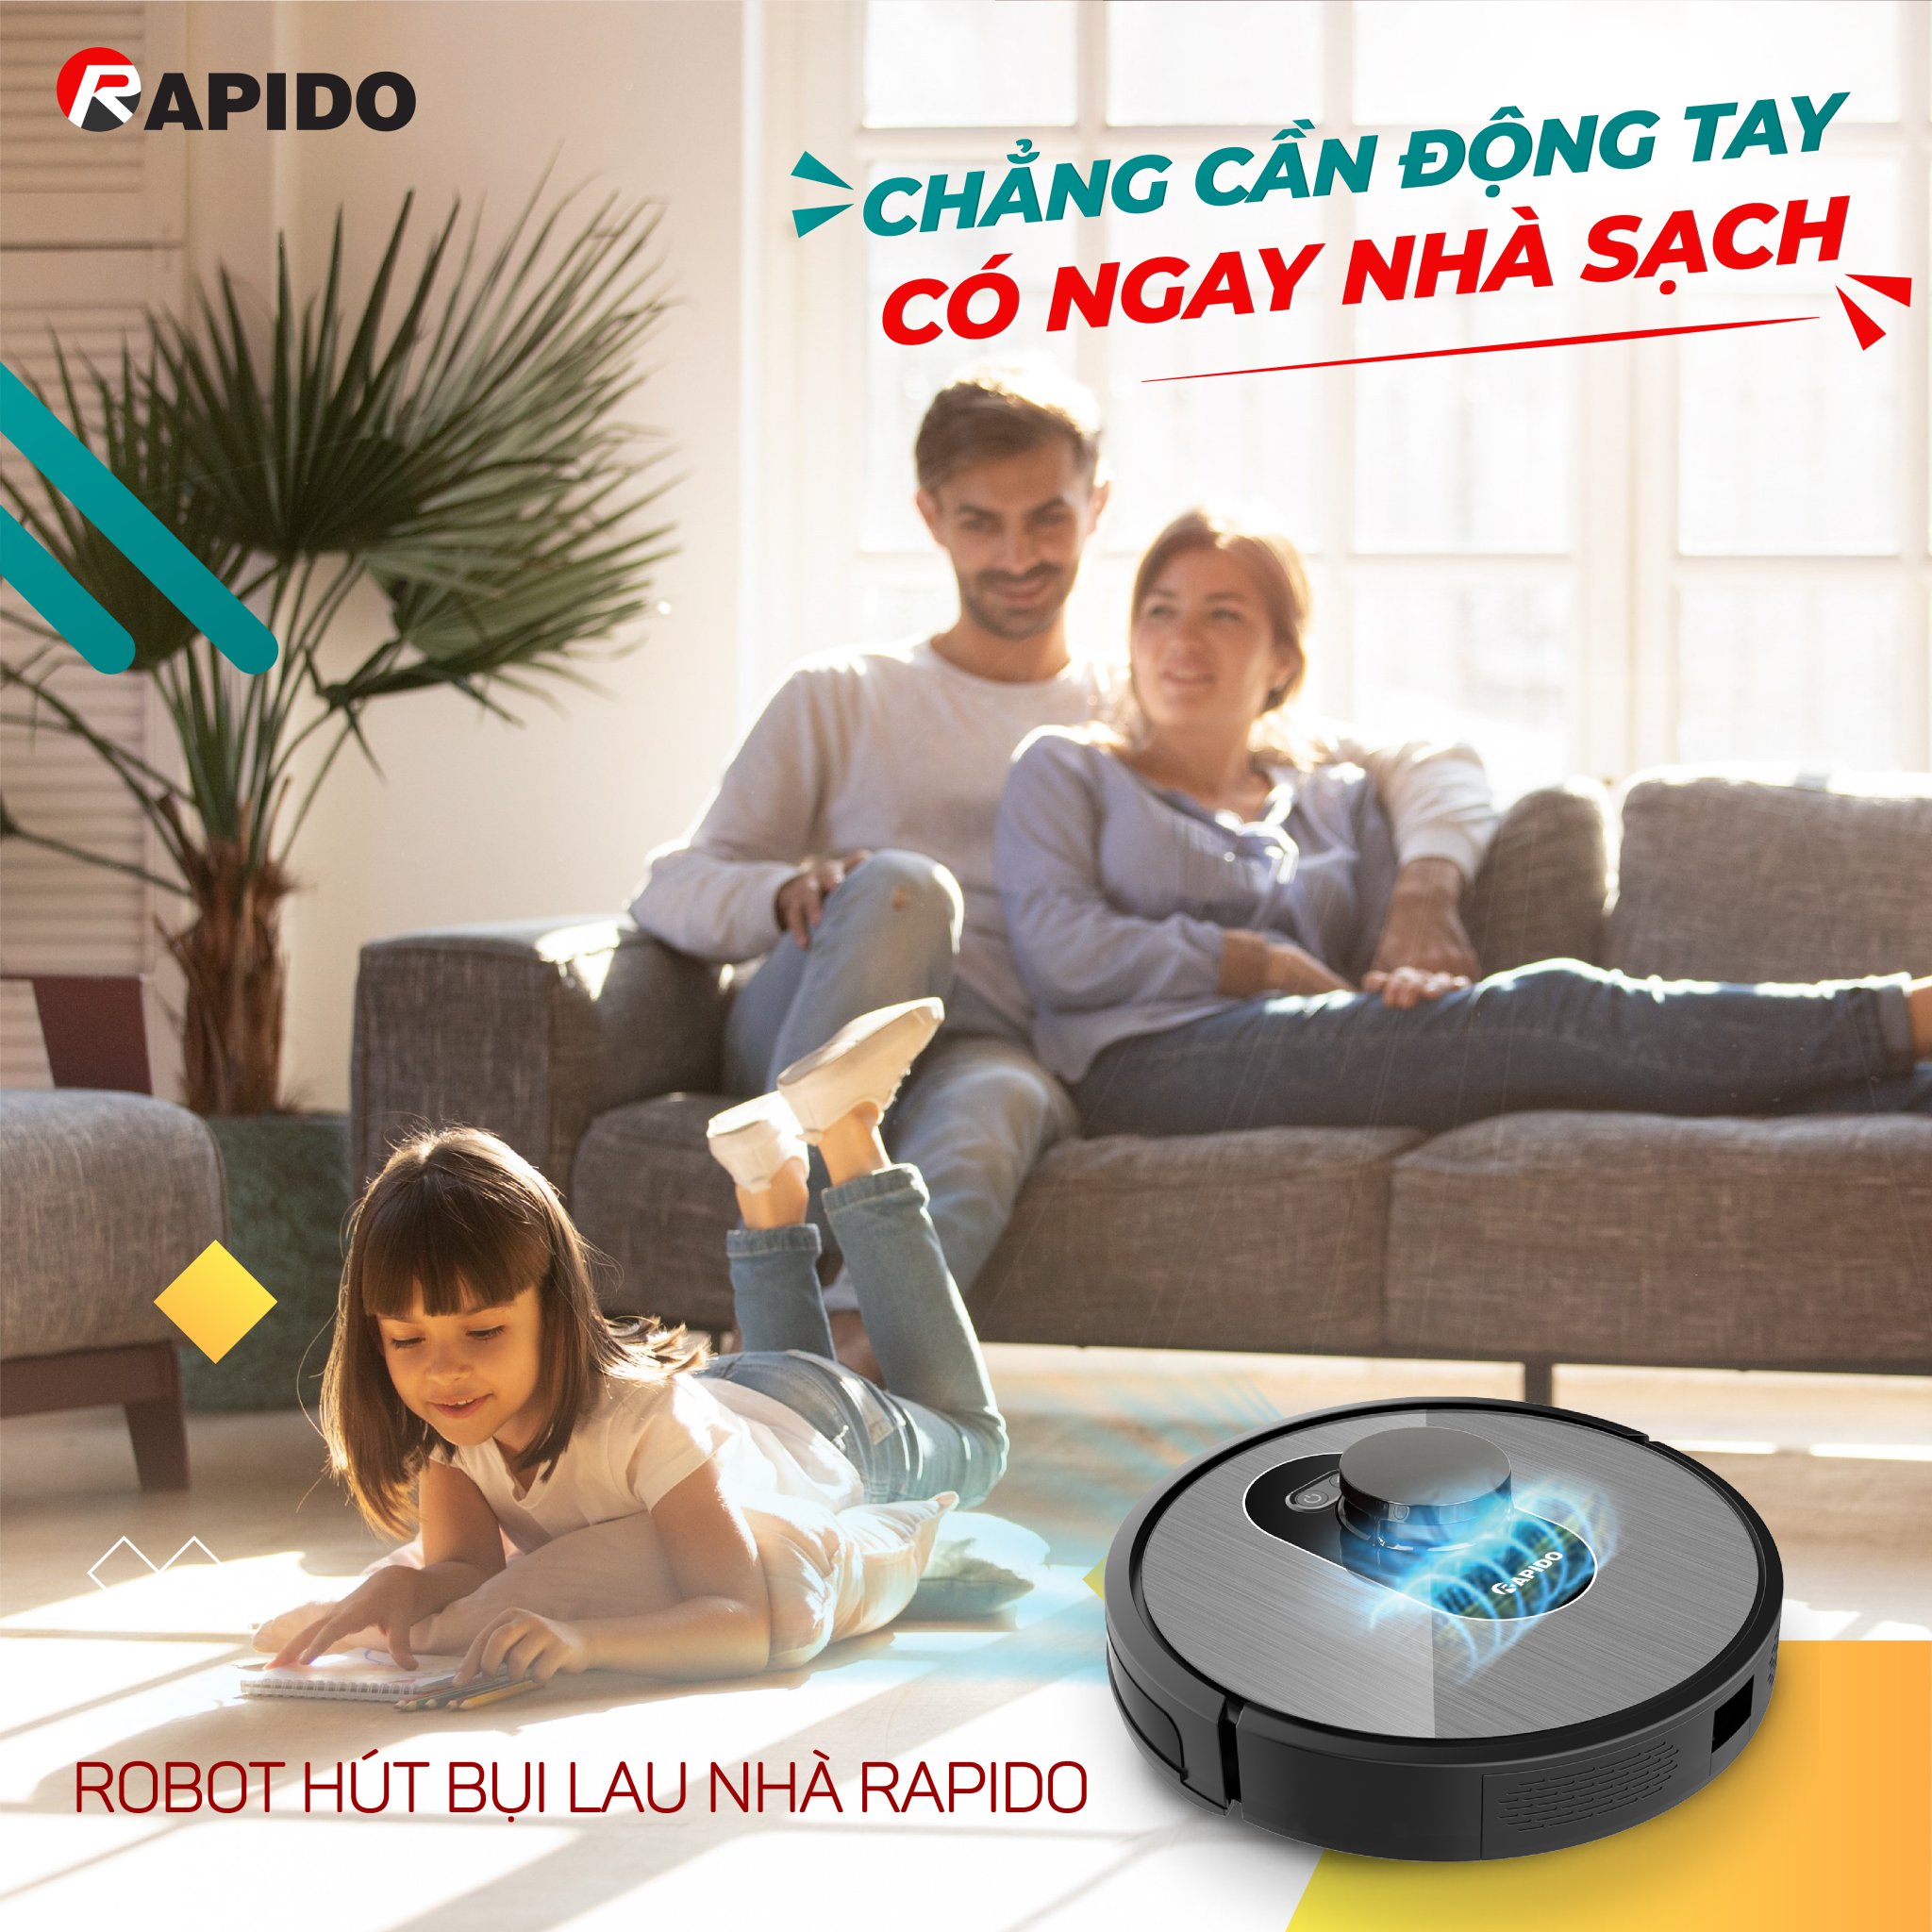 Robot hút bụi lau nhà Rapido giúp cuộc sống gia đình bạn trở nên thoải mái và thư thái hơn